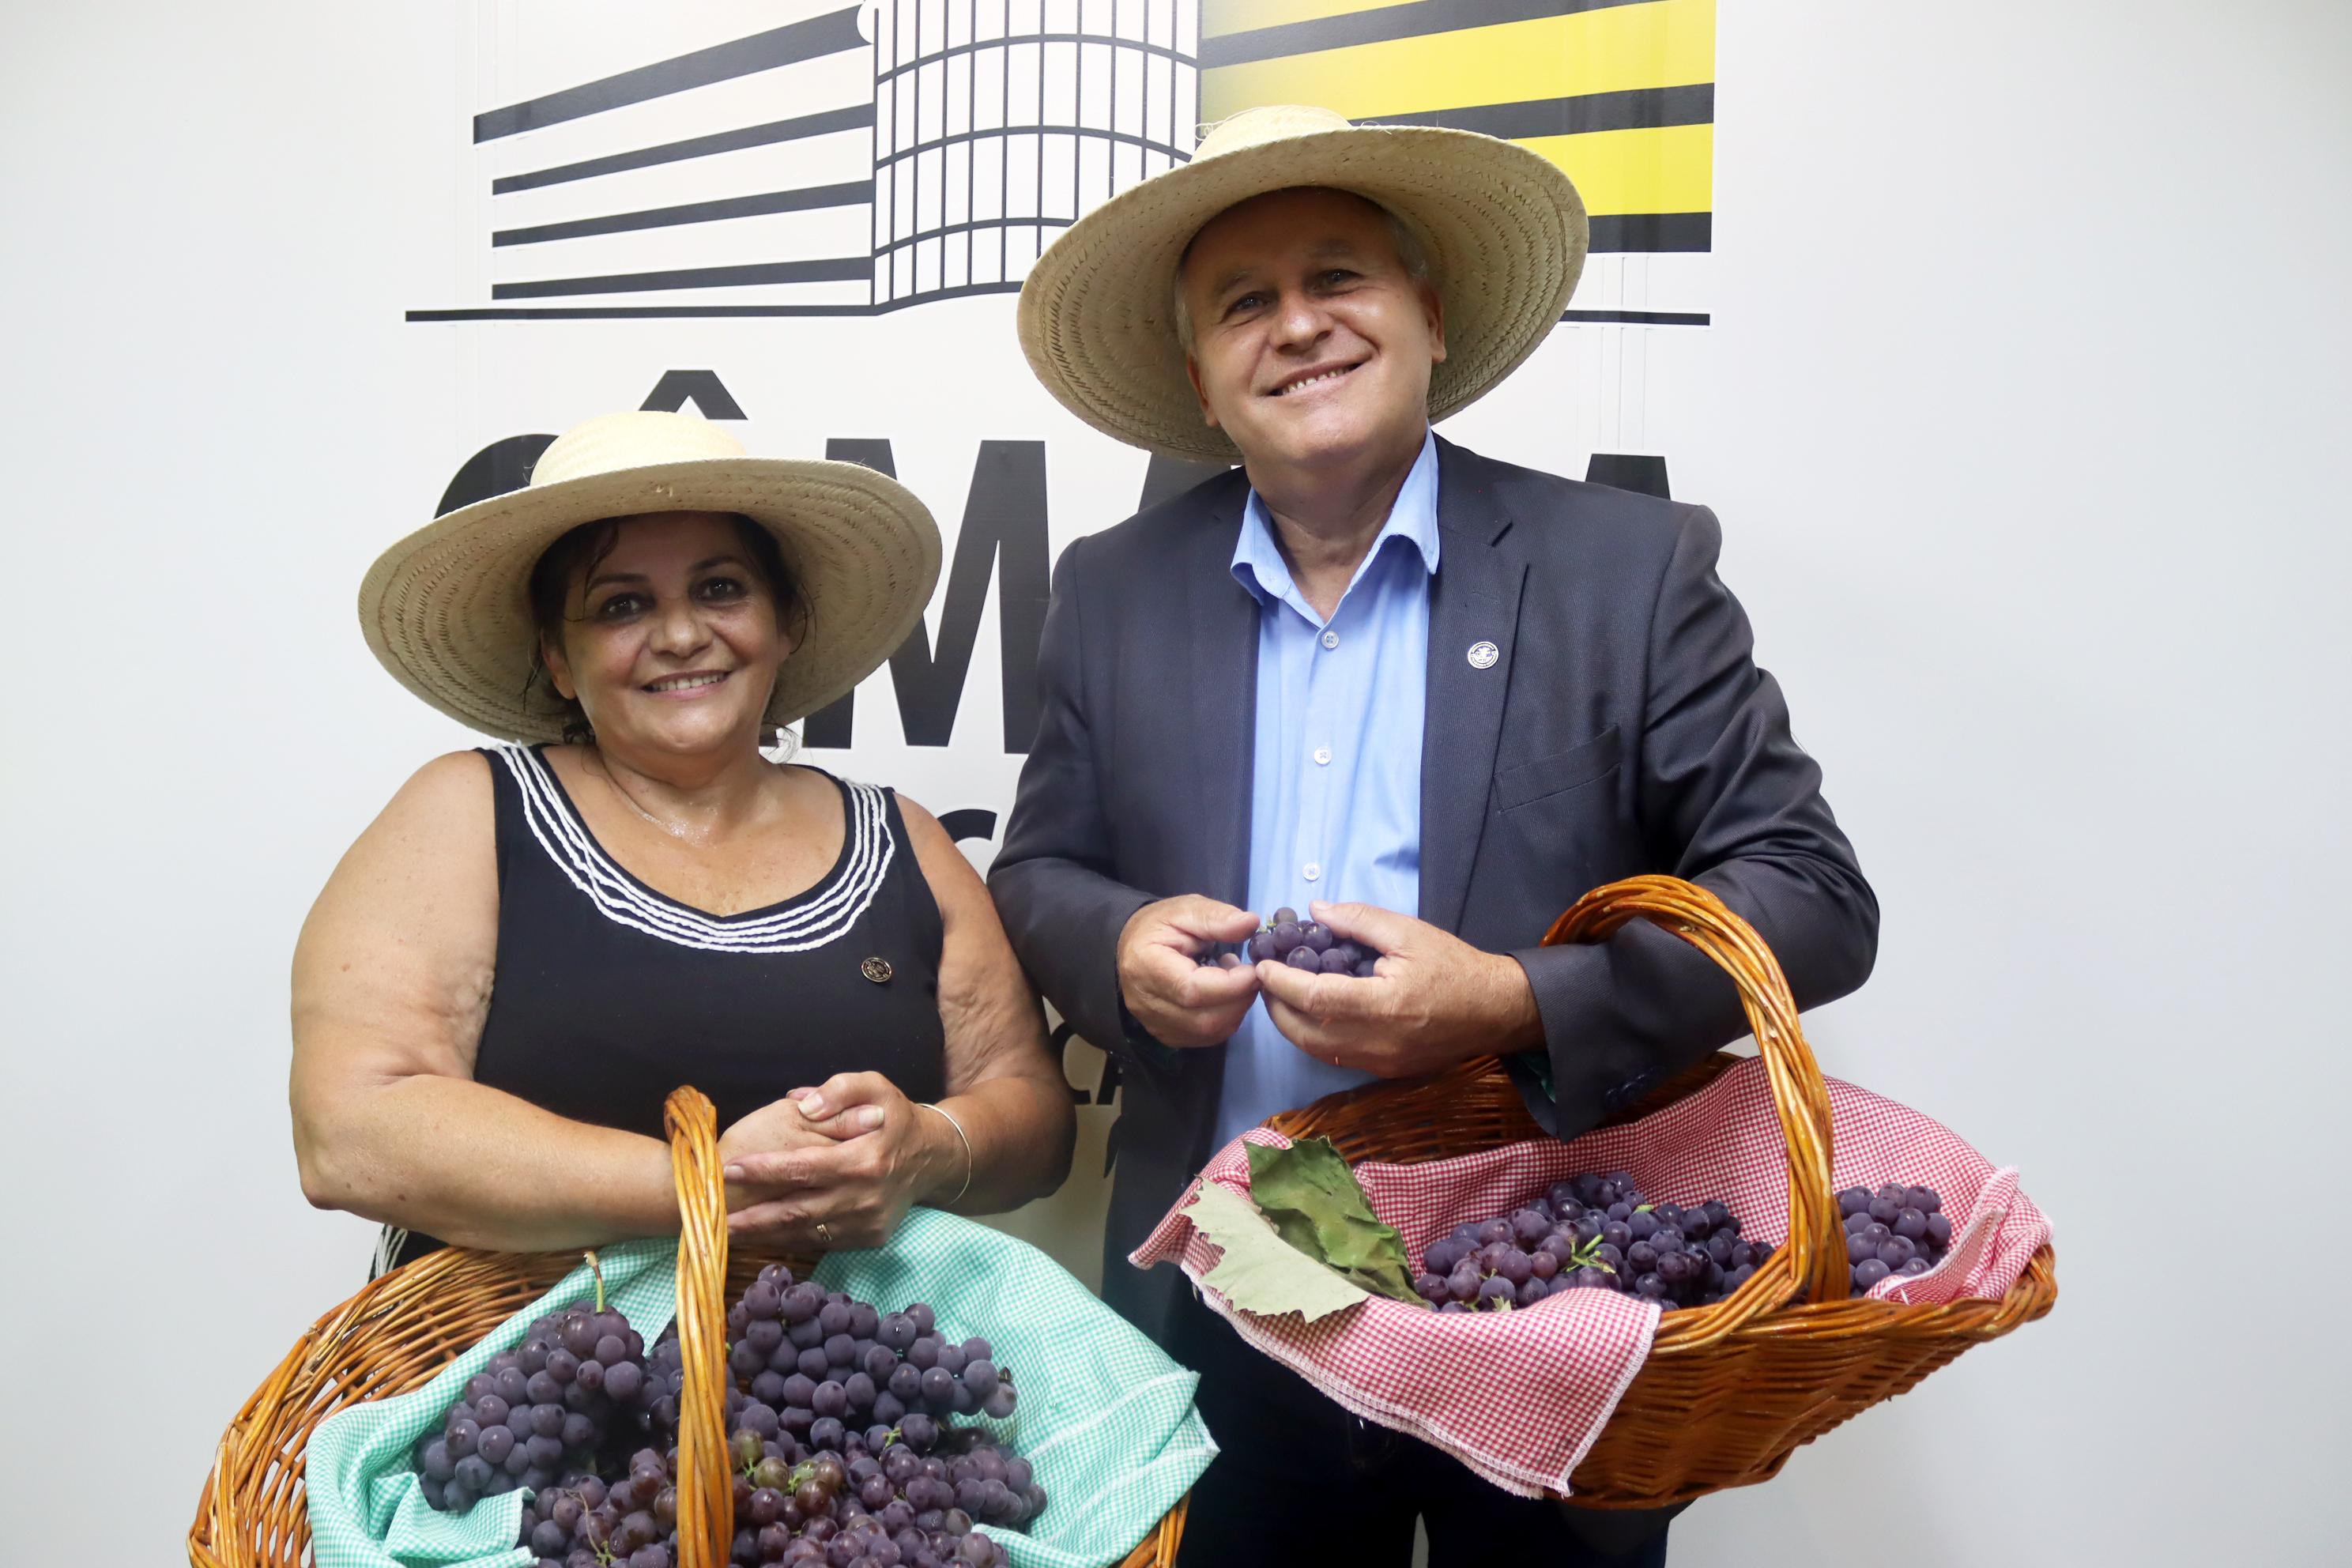 Comissão de Agricultura do Legislativo promove distribuição de uvas ao público